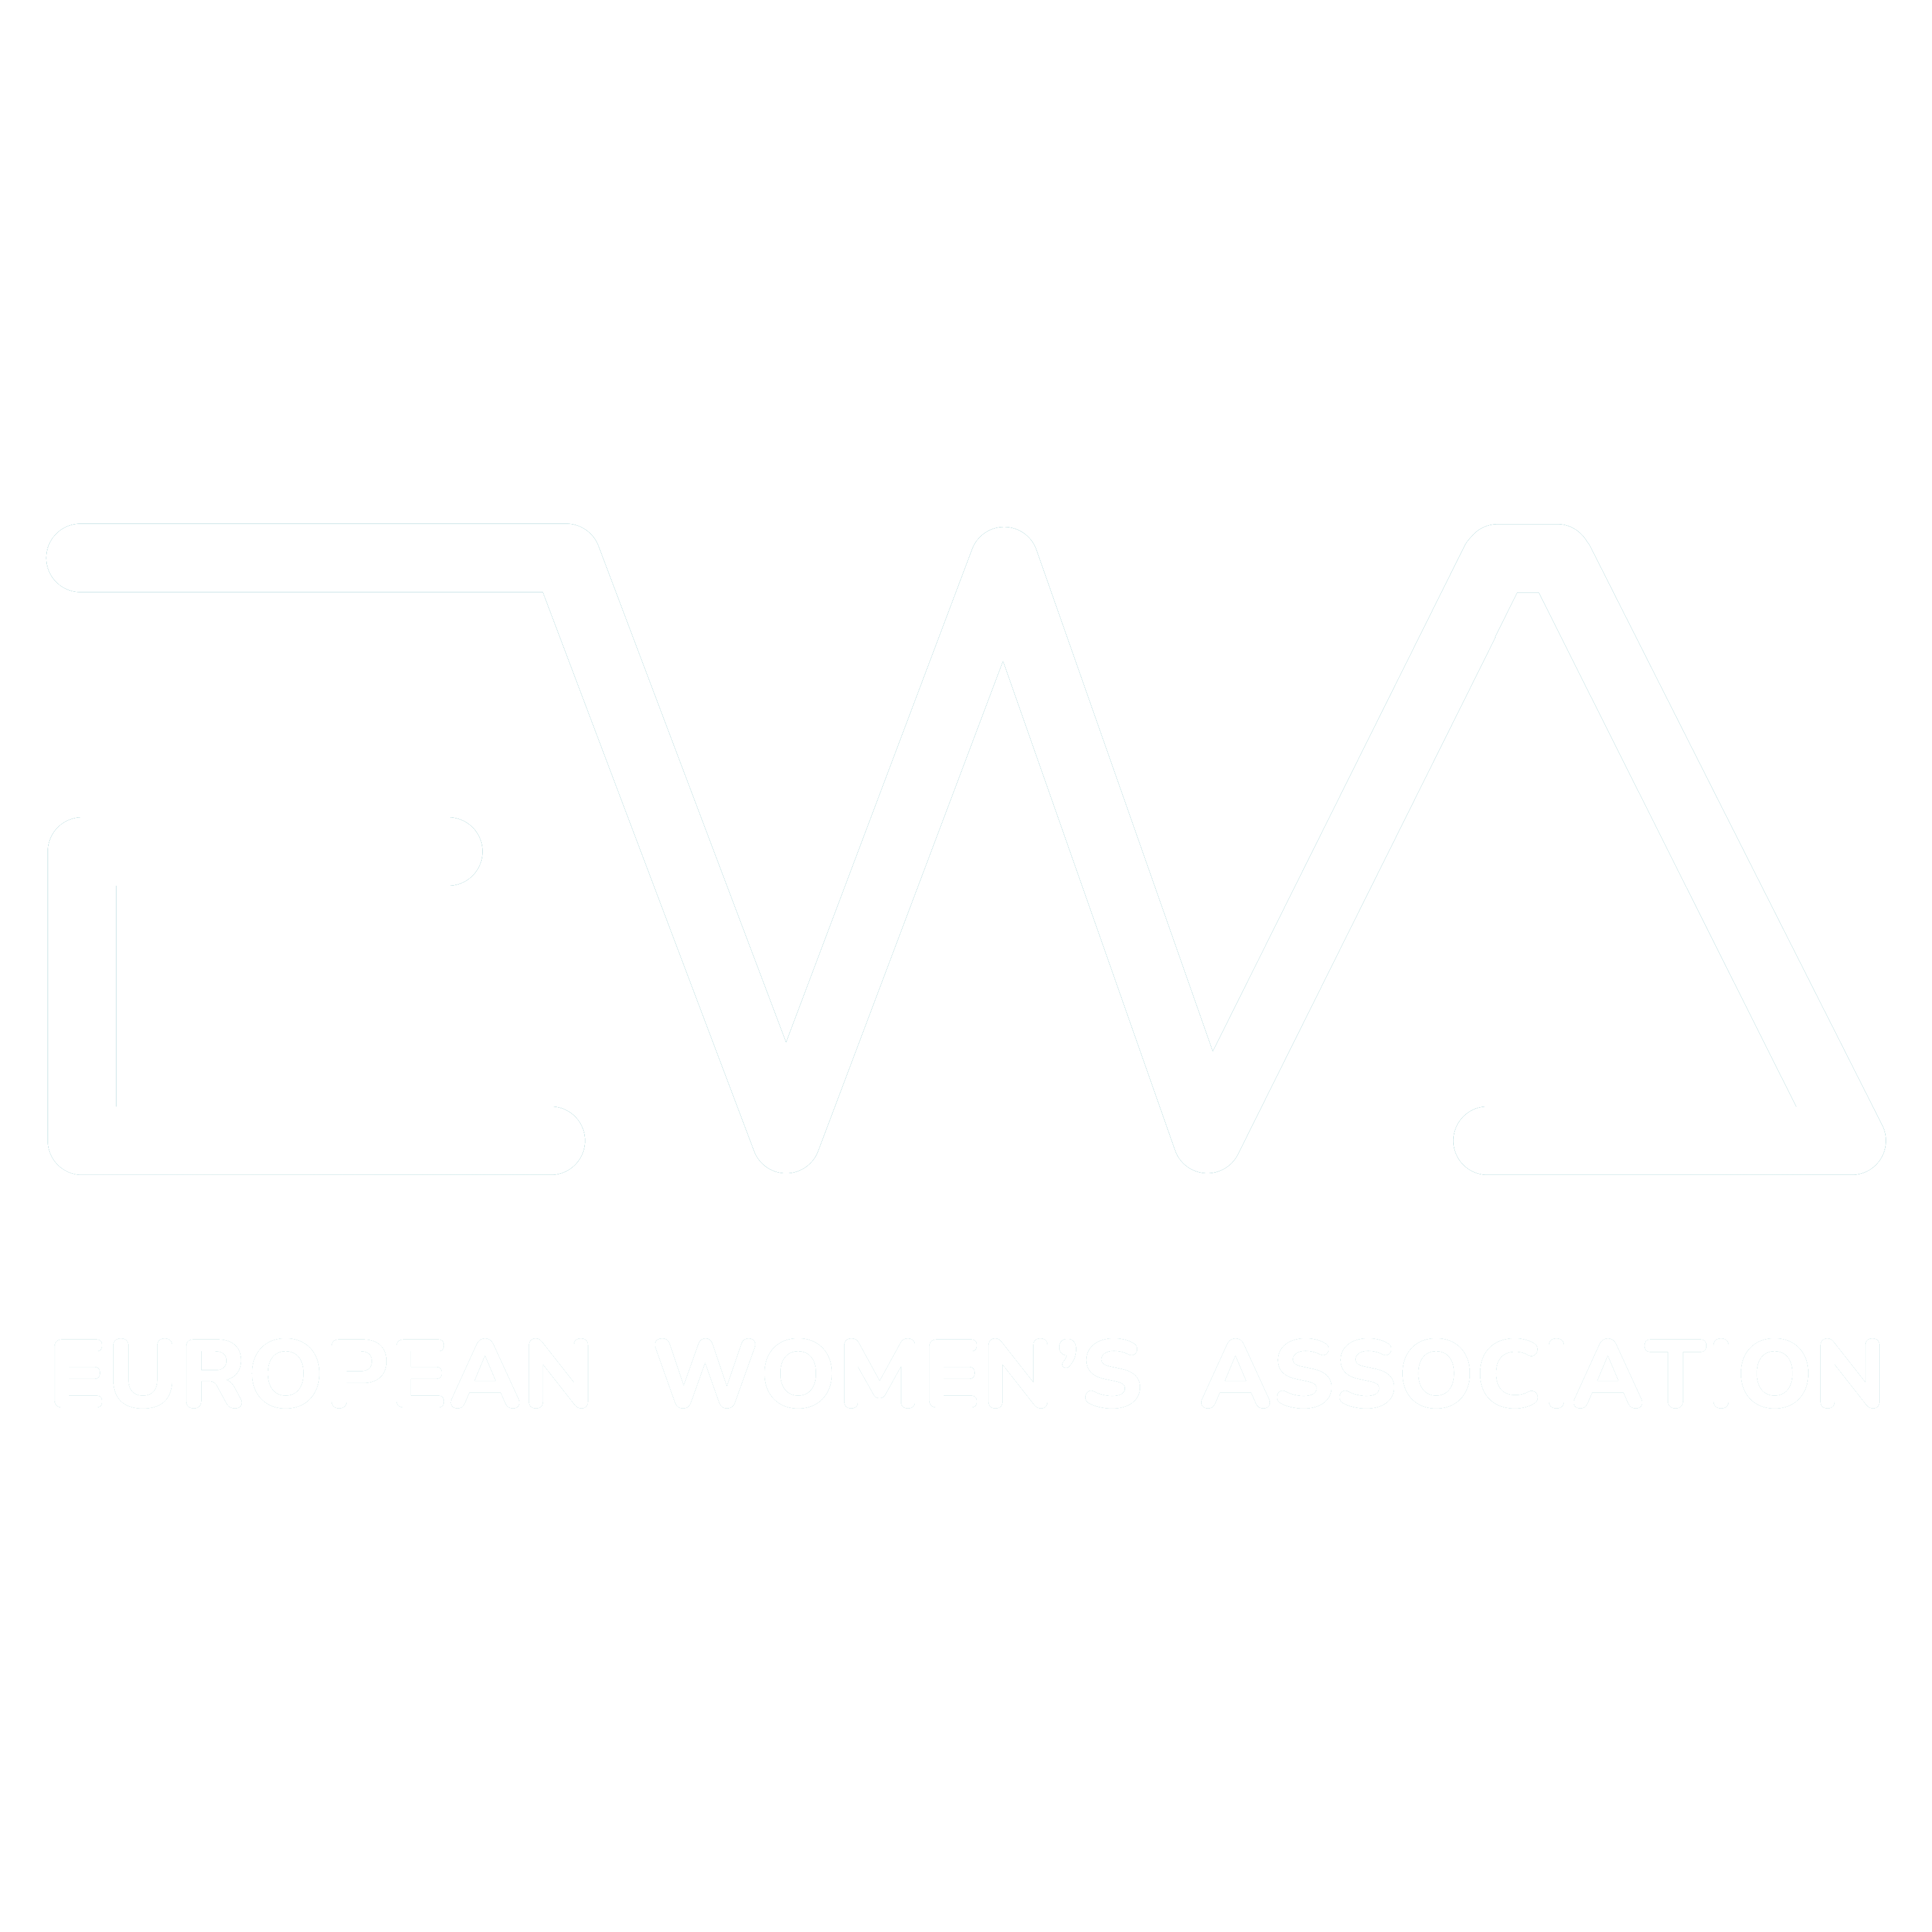 Sharjah Europe Businesswomen Forum